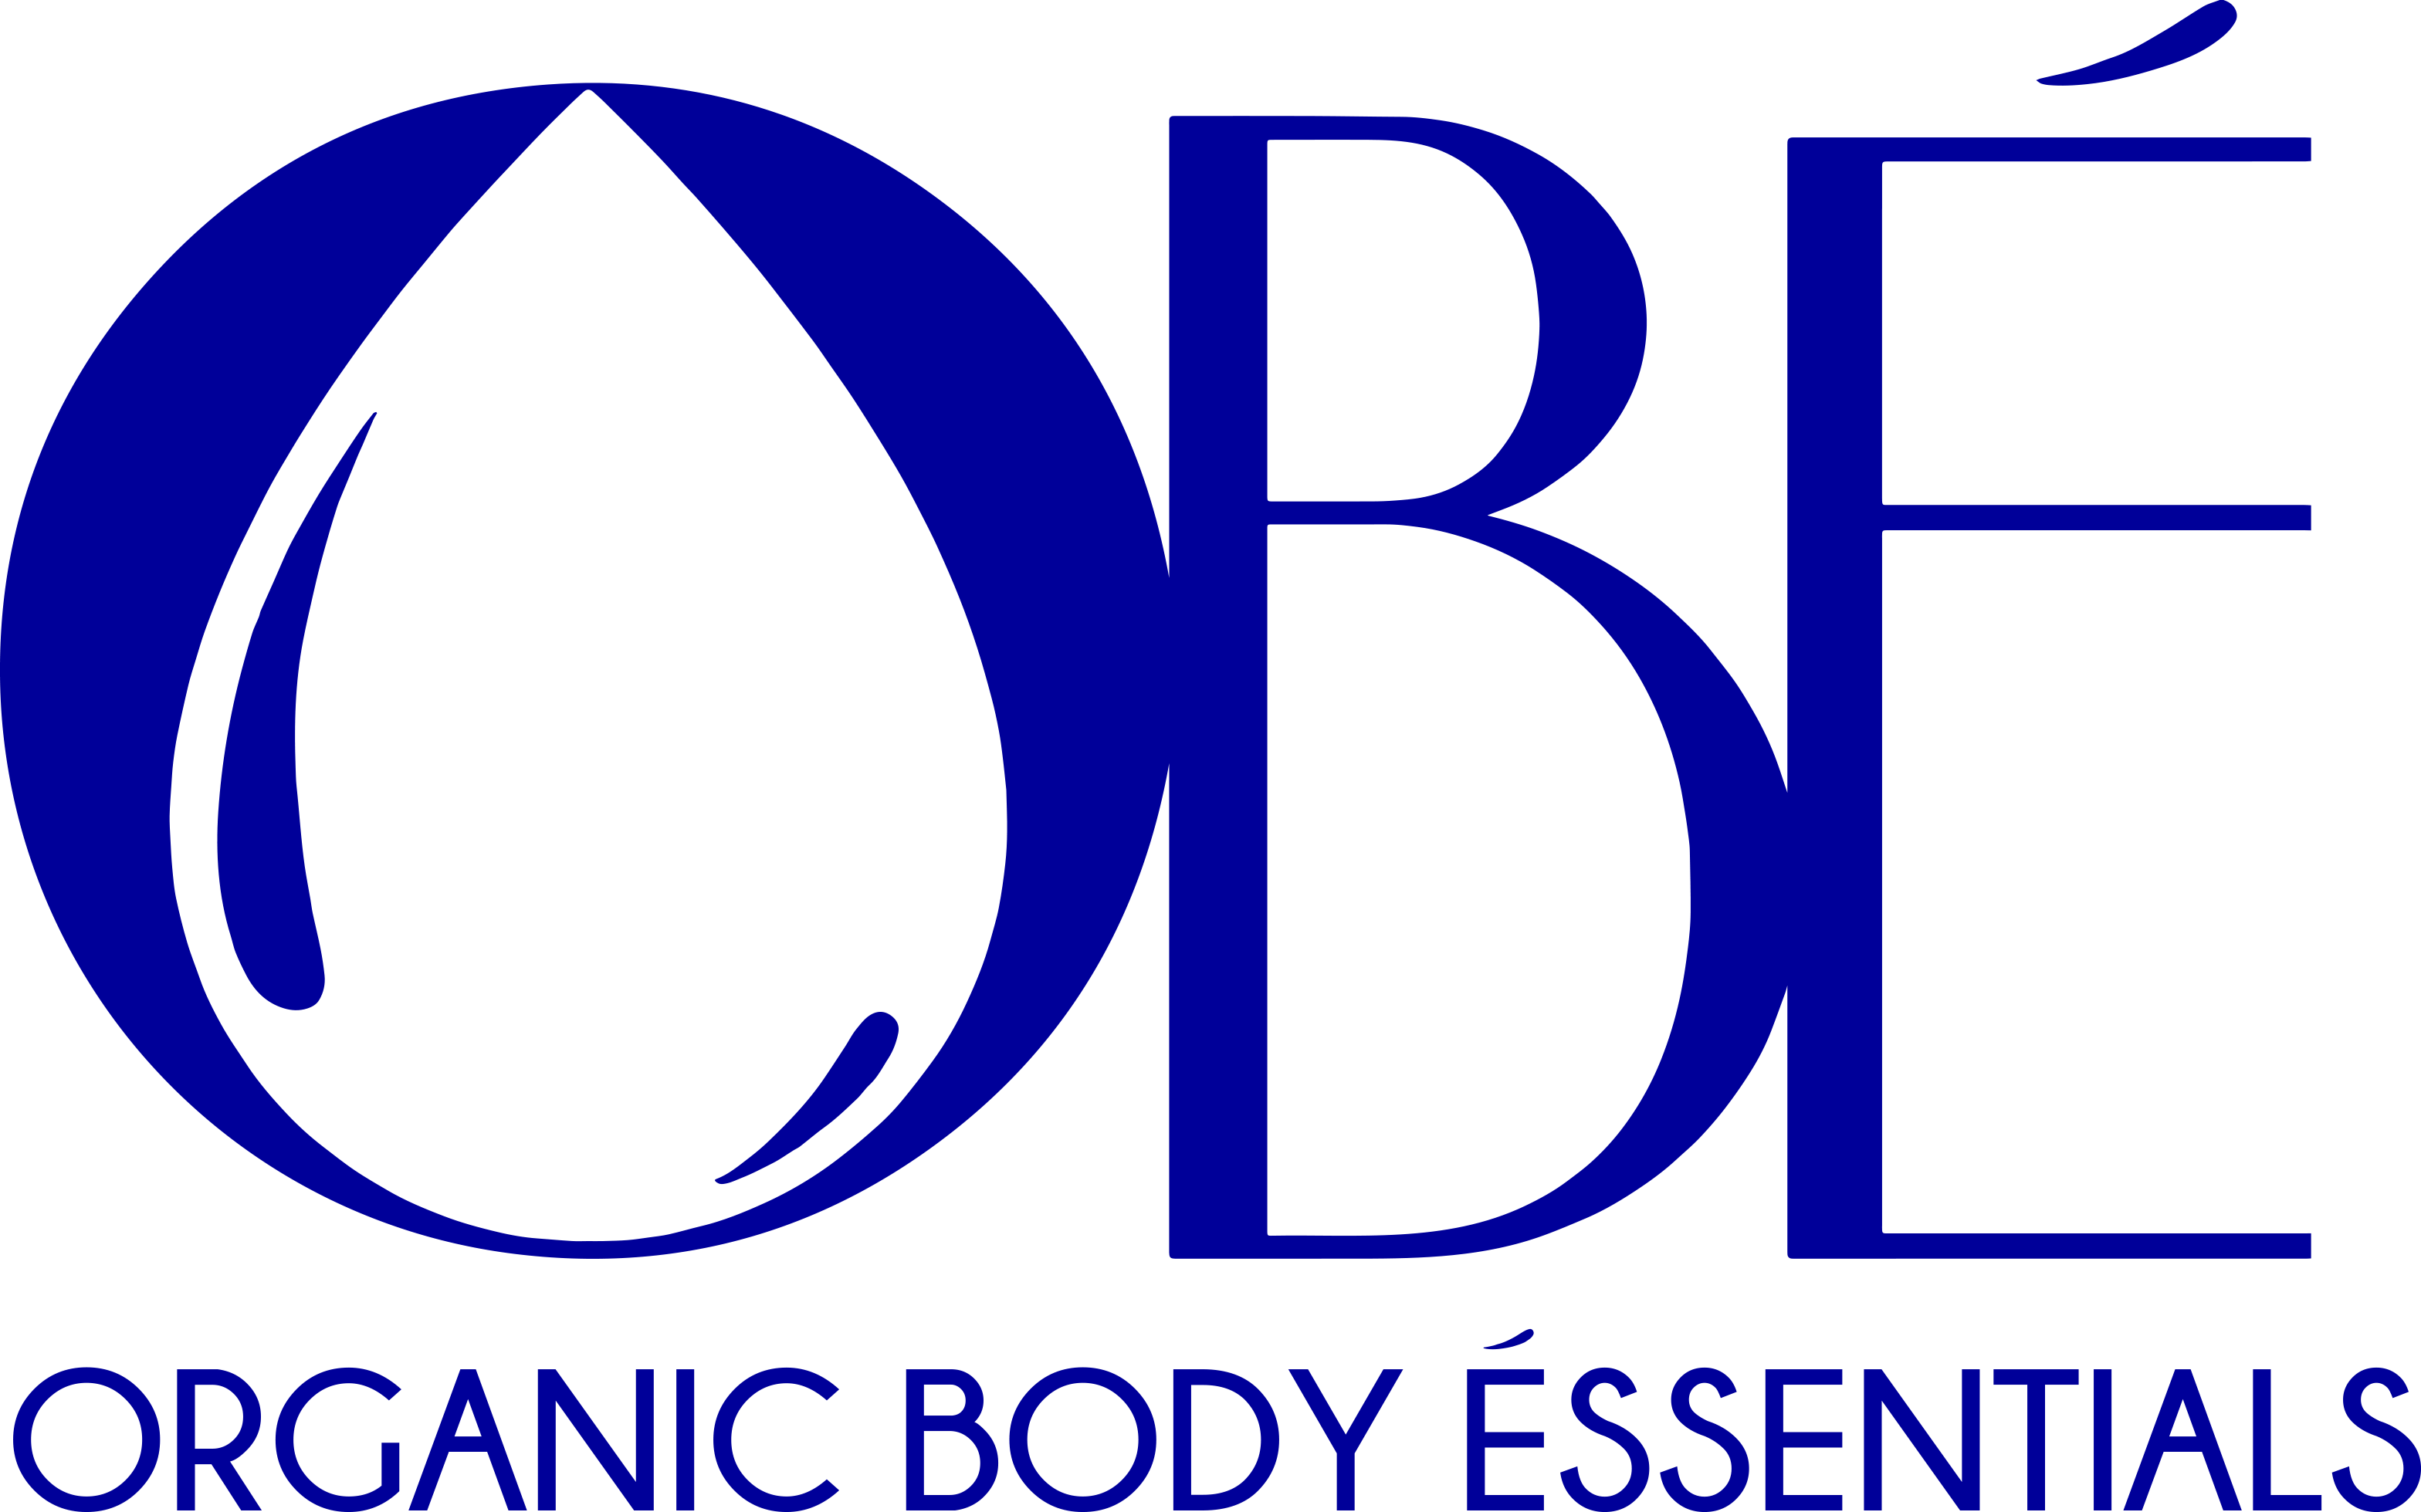 Organic Body Éssentials logo